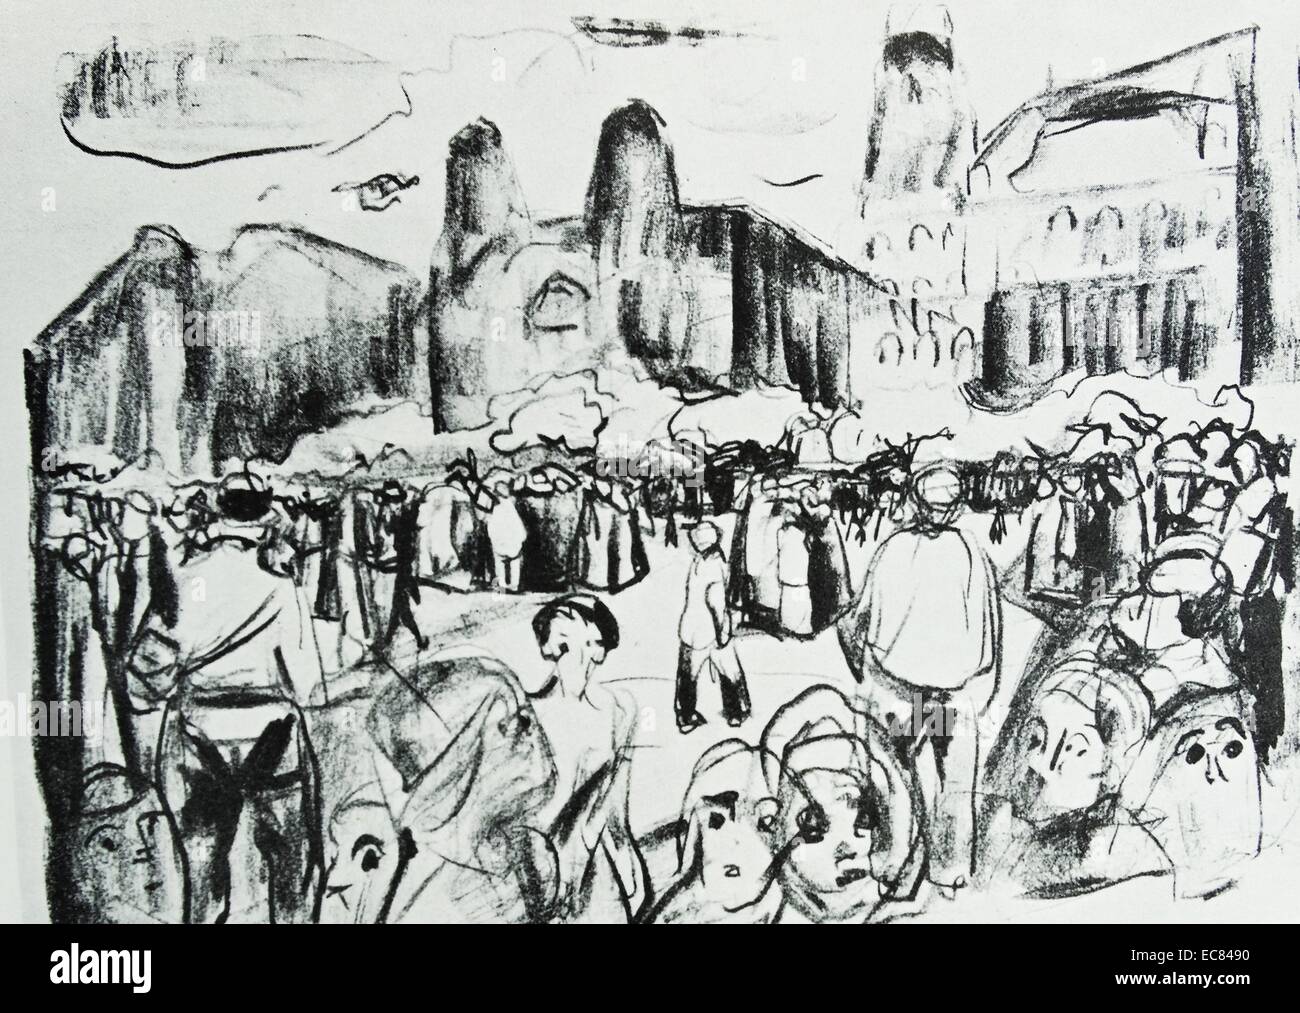 Arbeit mit dem Titel Konflikt am Frankfurter Bahnhopsplaza von der norwegischen Künstler Edvard Munch (1863-1944). Diese Arbeit wurde im Jahr 1920 produziert. Stockfoto